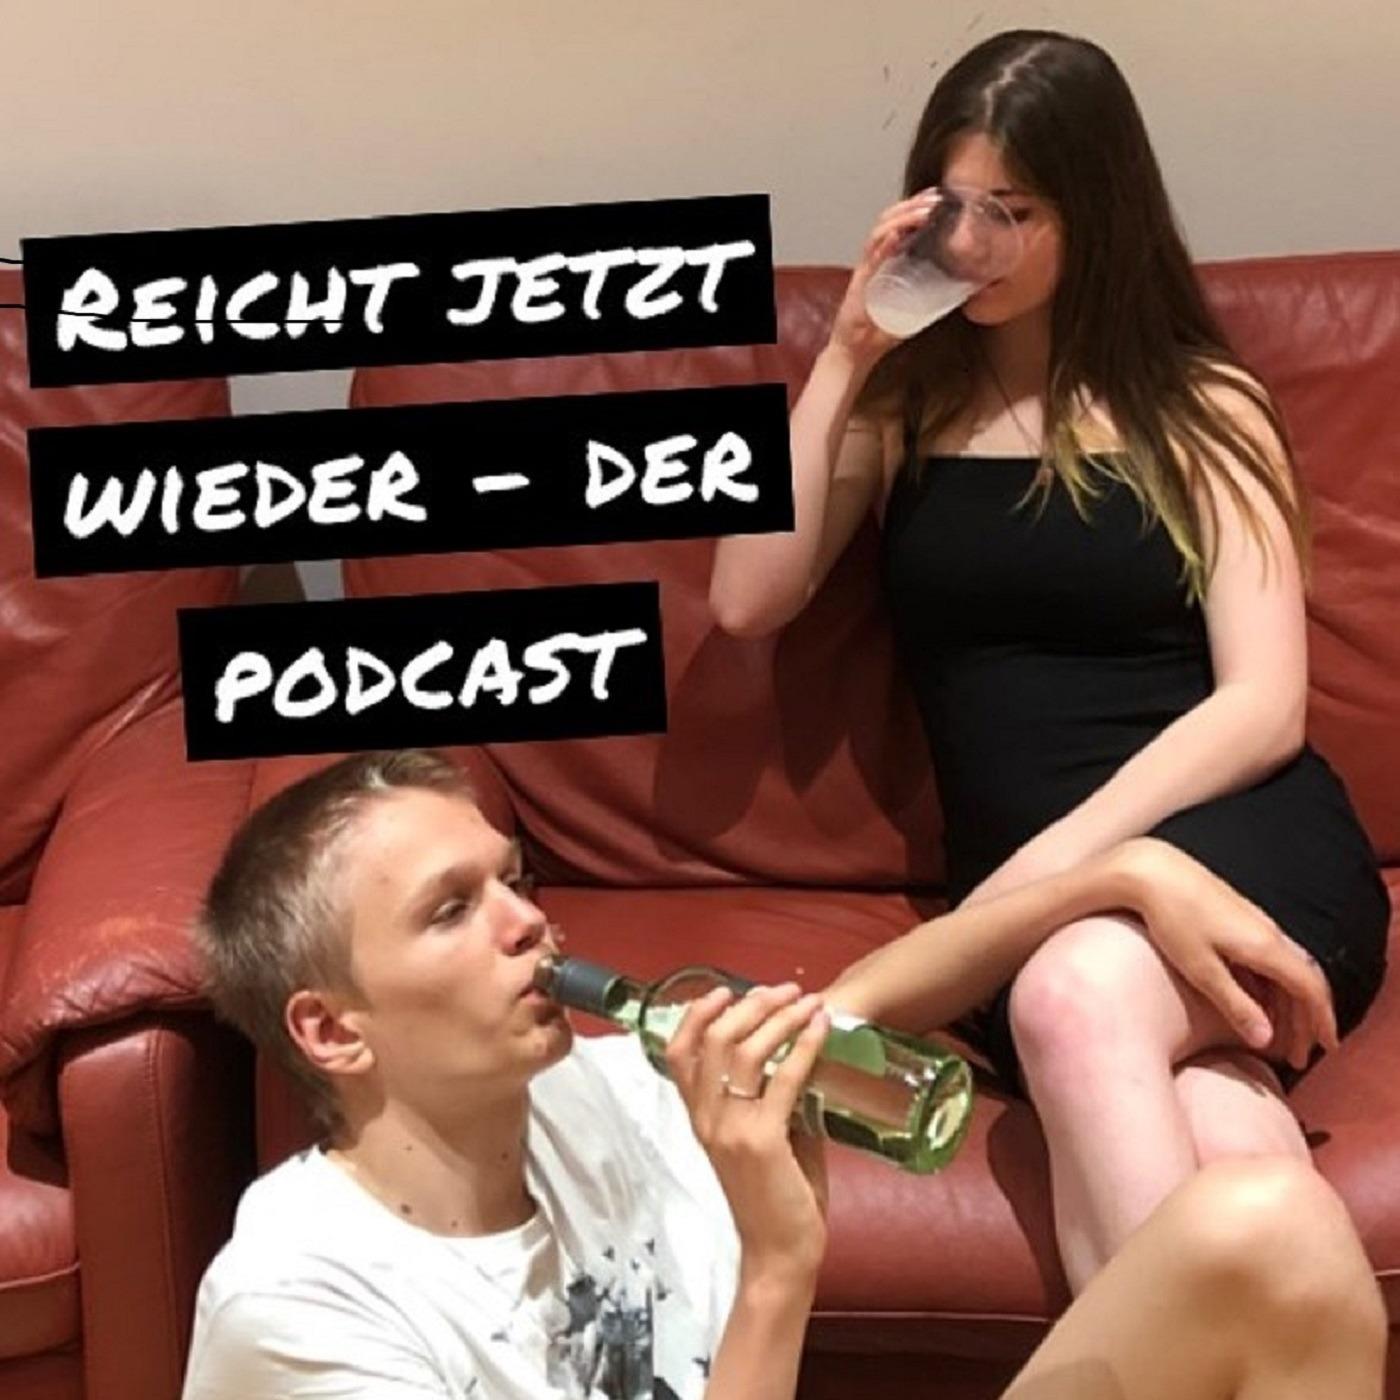 Reicht jetzt wieder - Der Podcast